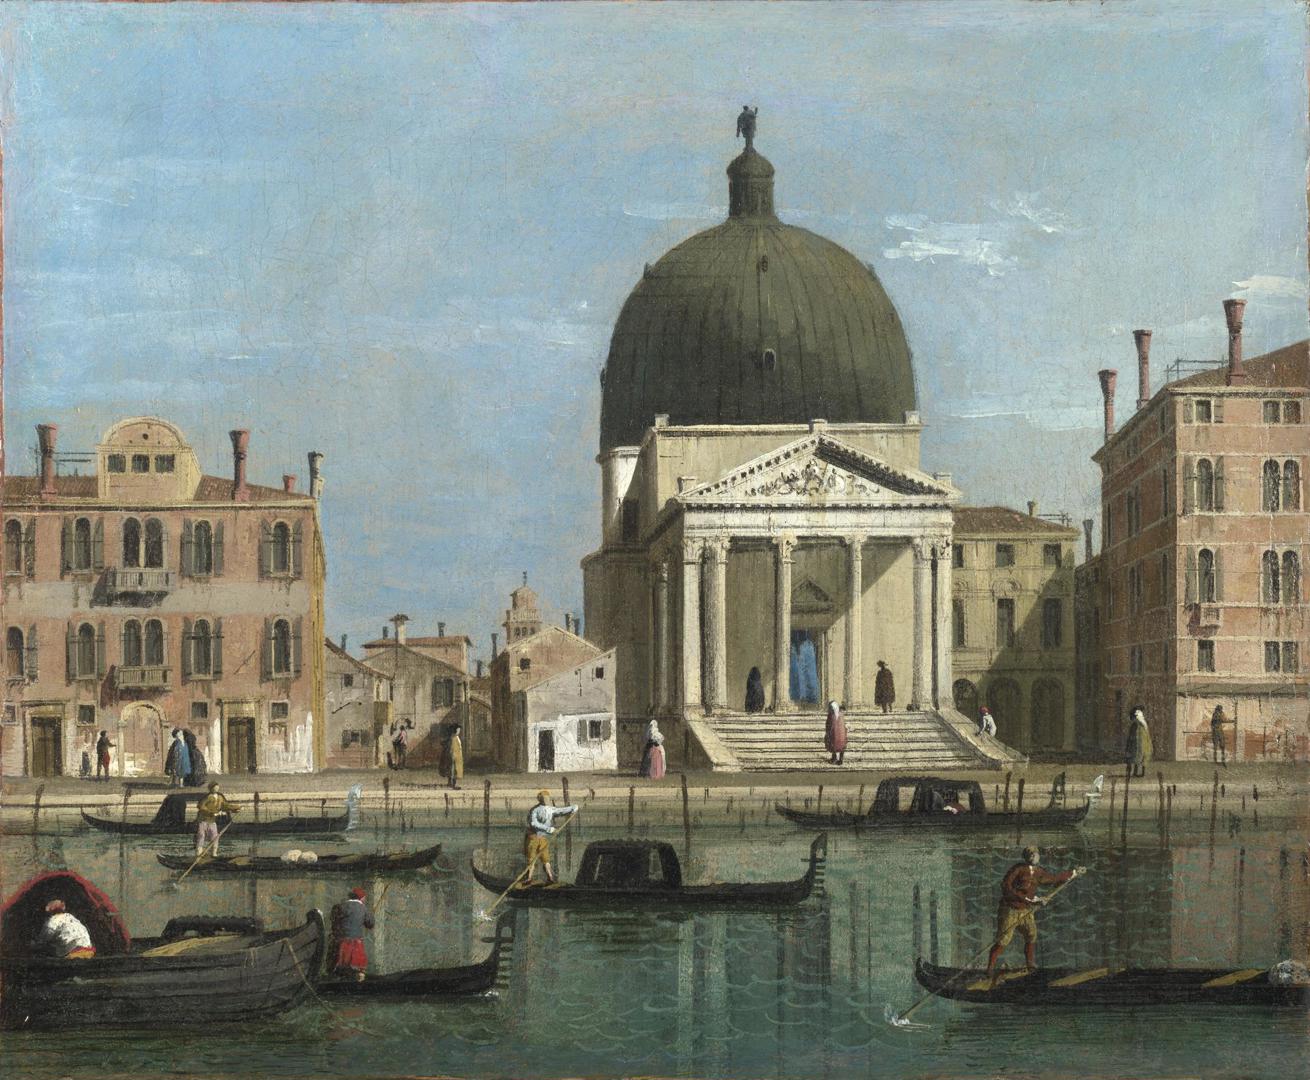 Venice: S. Simeone Piccolo by Follower of Canaletto